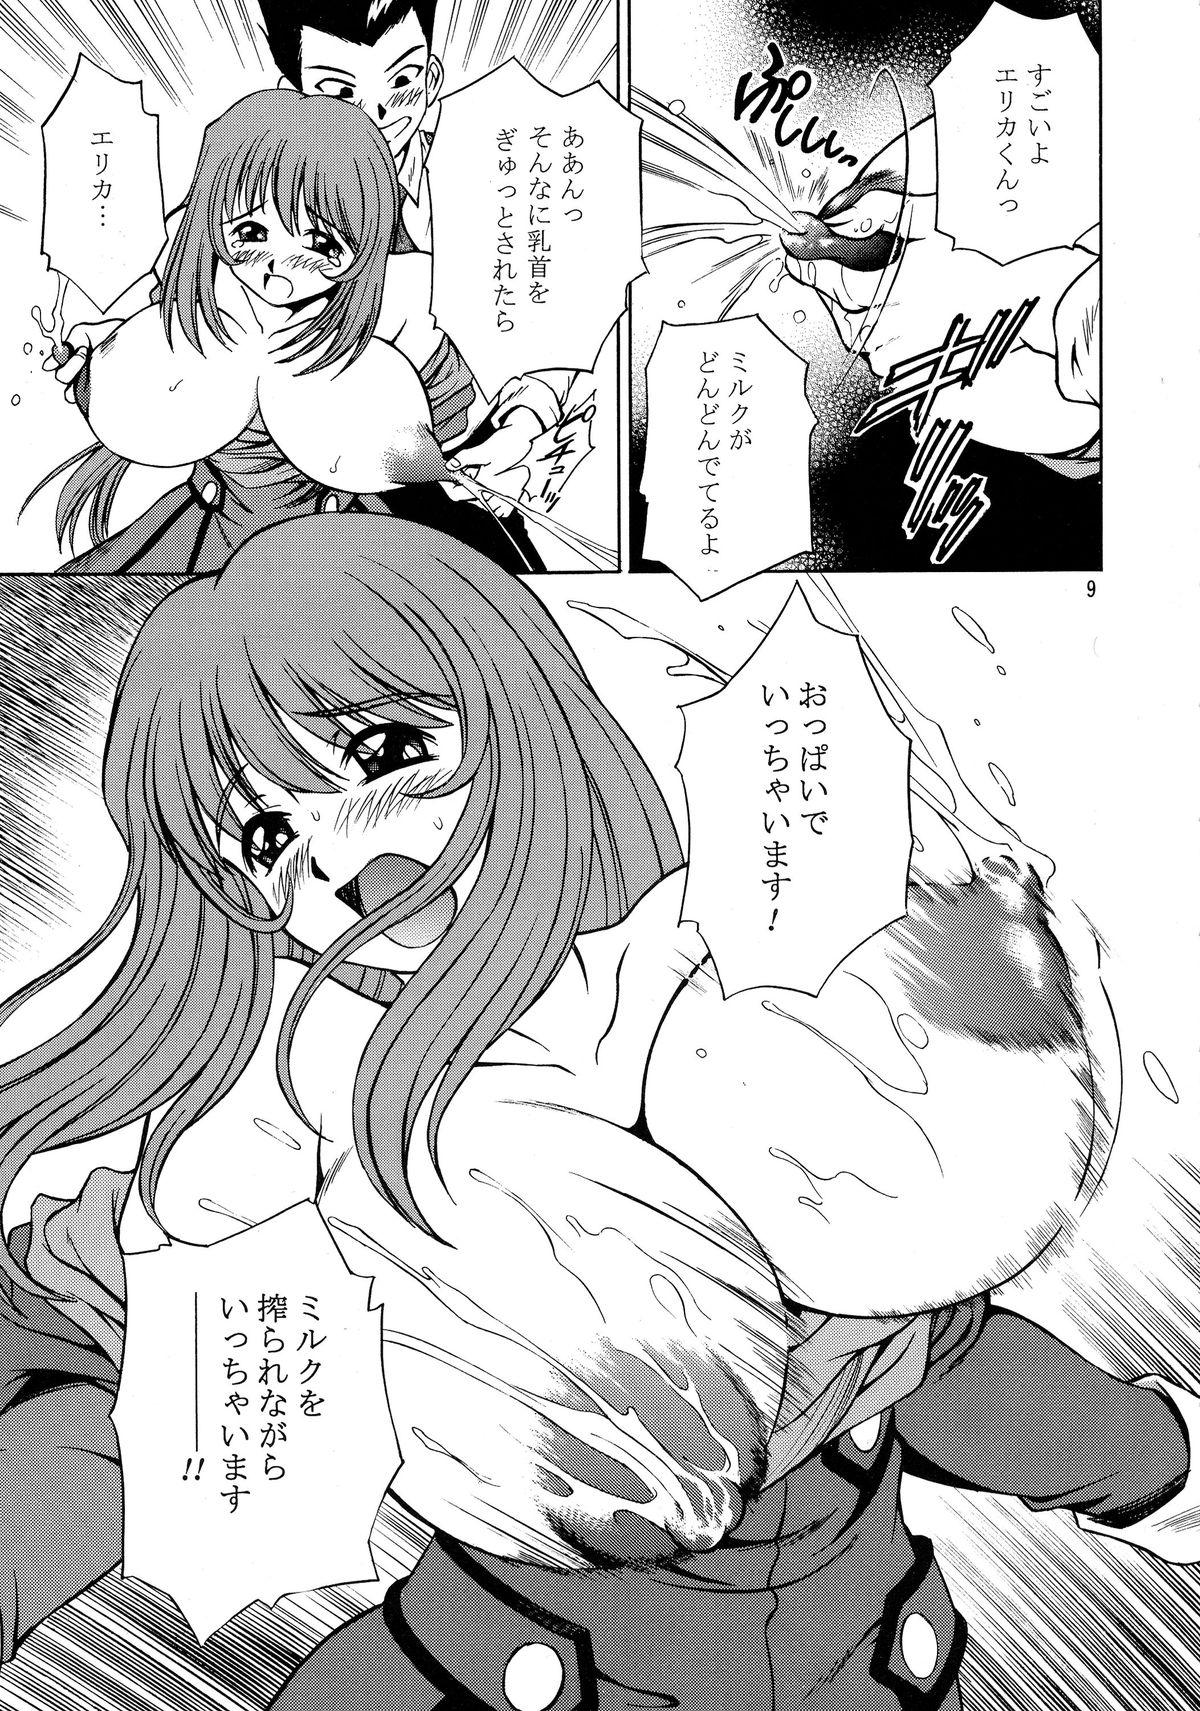 Amature Allure TRANCE MODE - Sakura taisen Hoe - Page 10